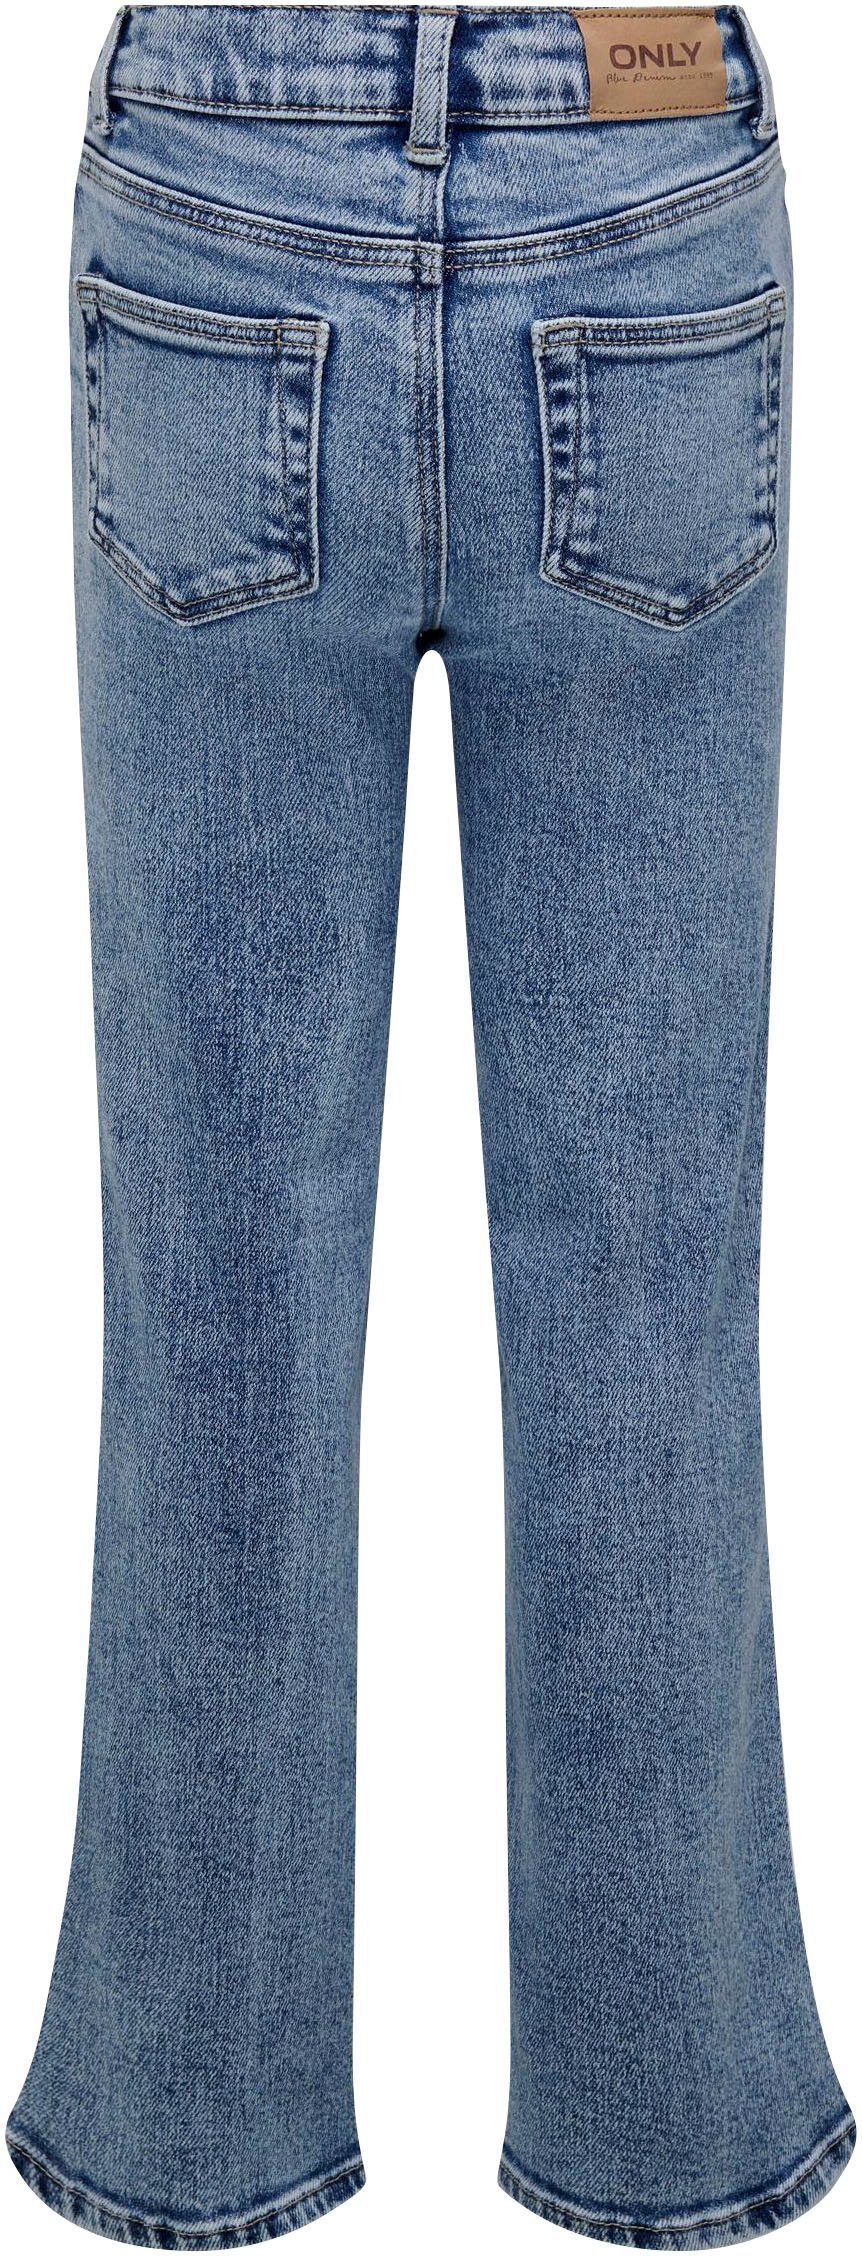 KIDS DN KOGJUICY DEST LEG WIDE 5-Pocket-Jeans ONLY